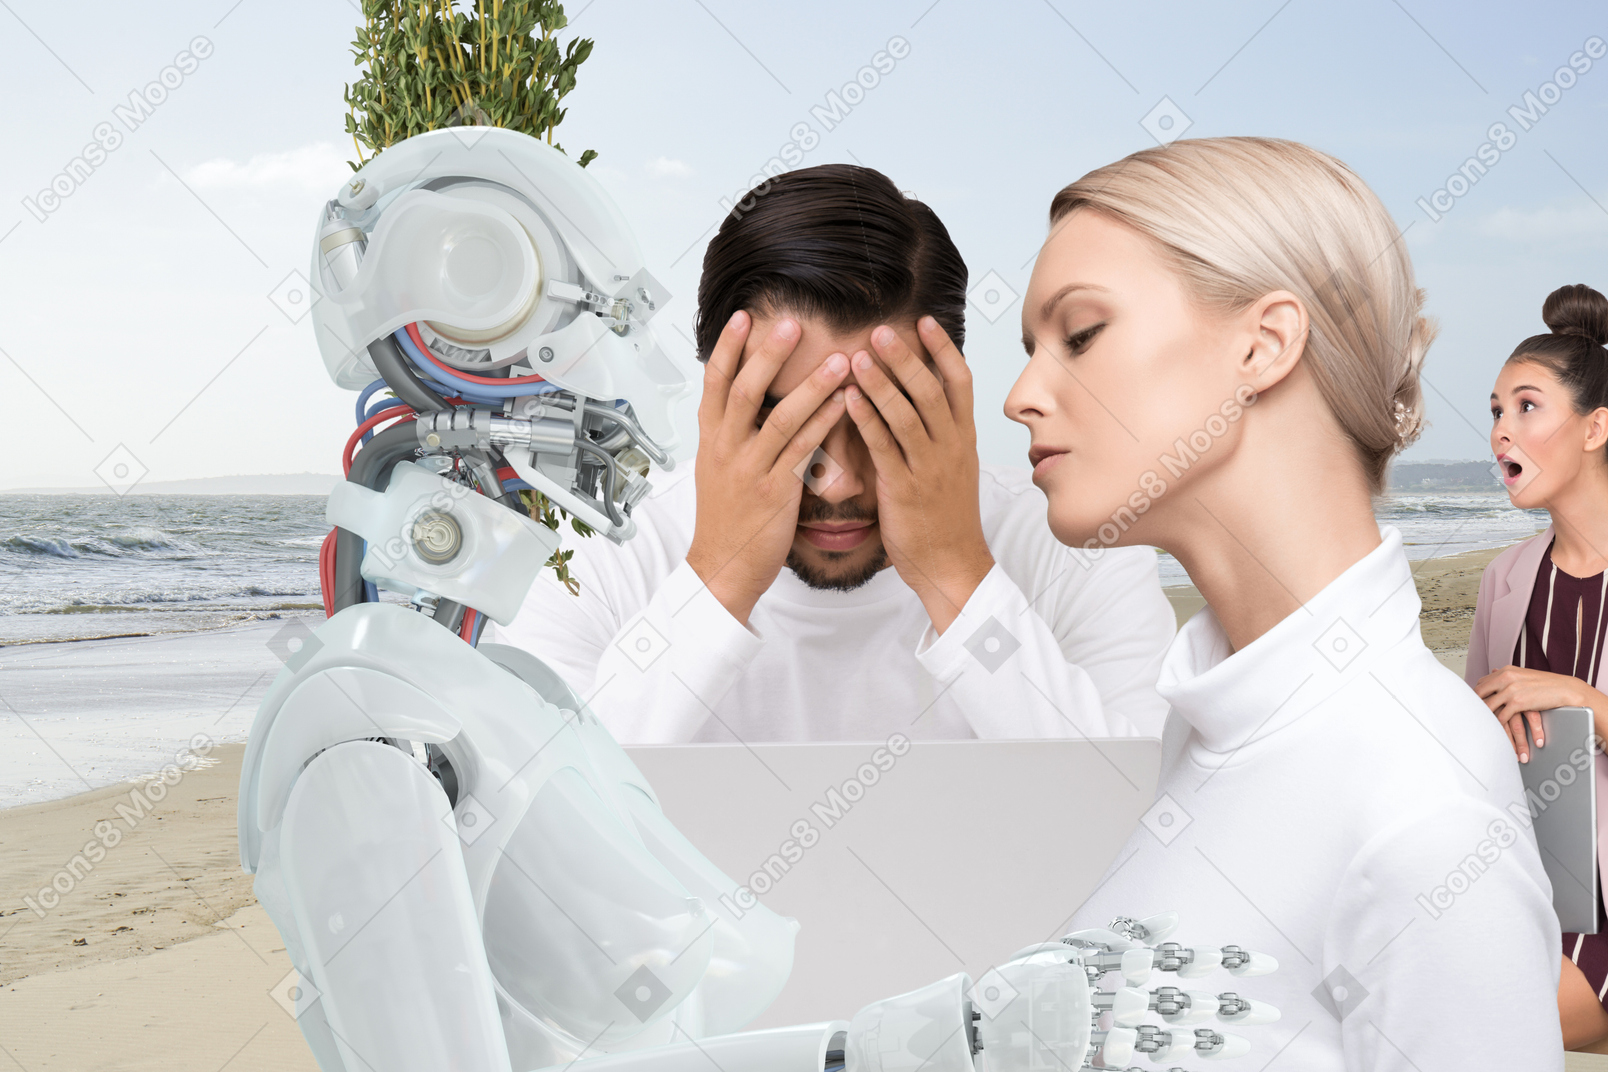 Liebe zwischen mensch und roboter